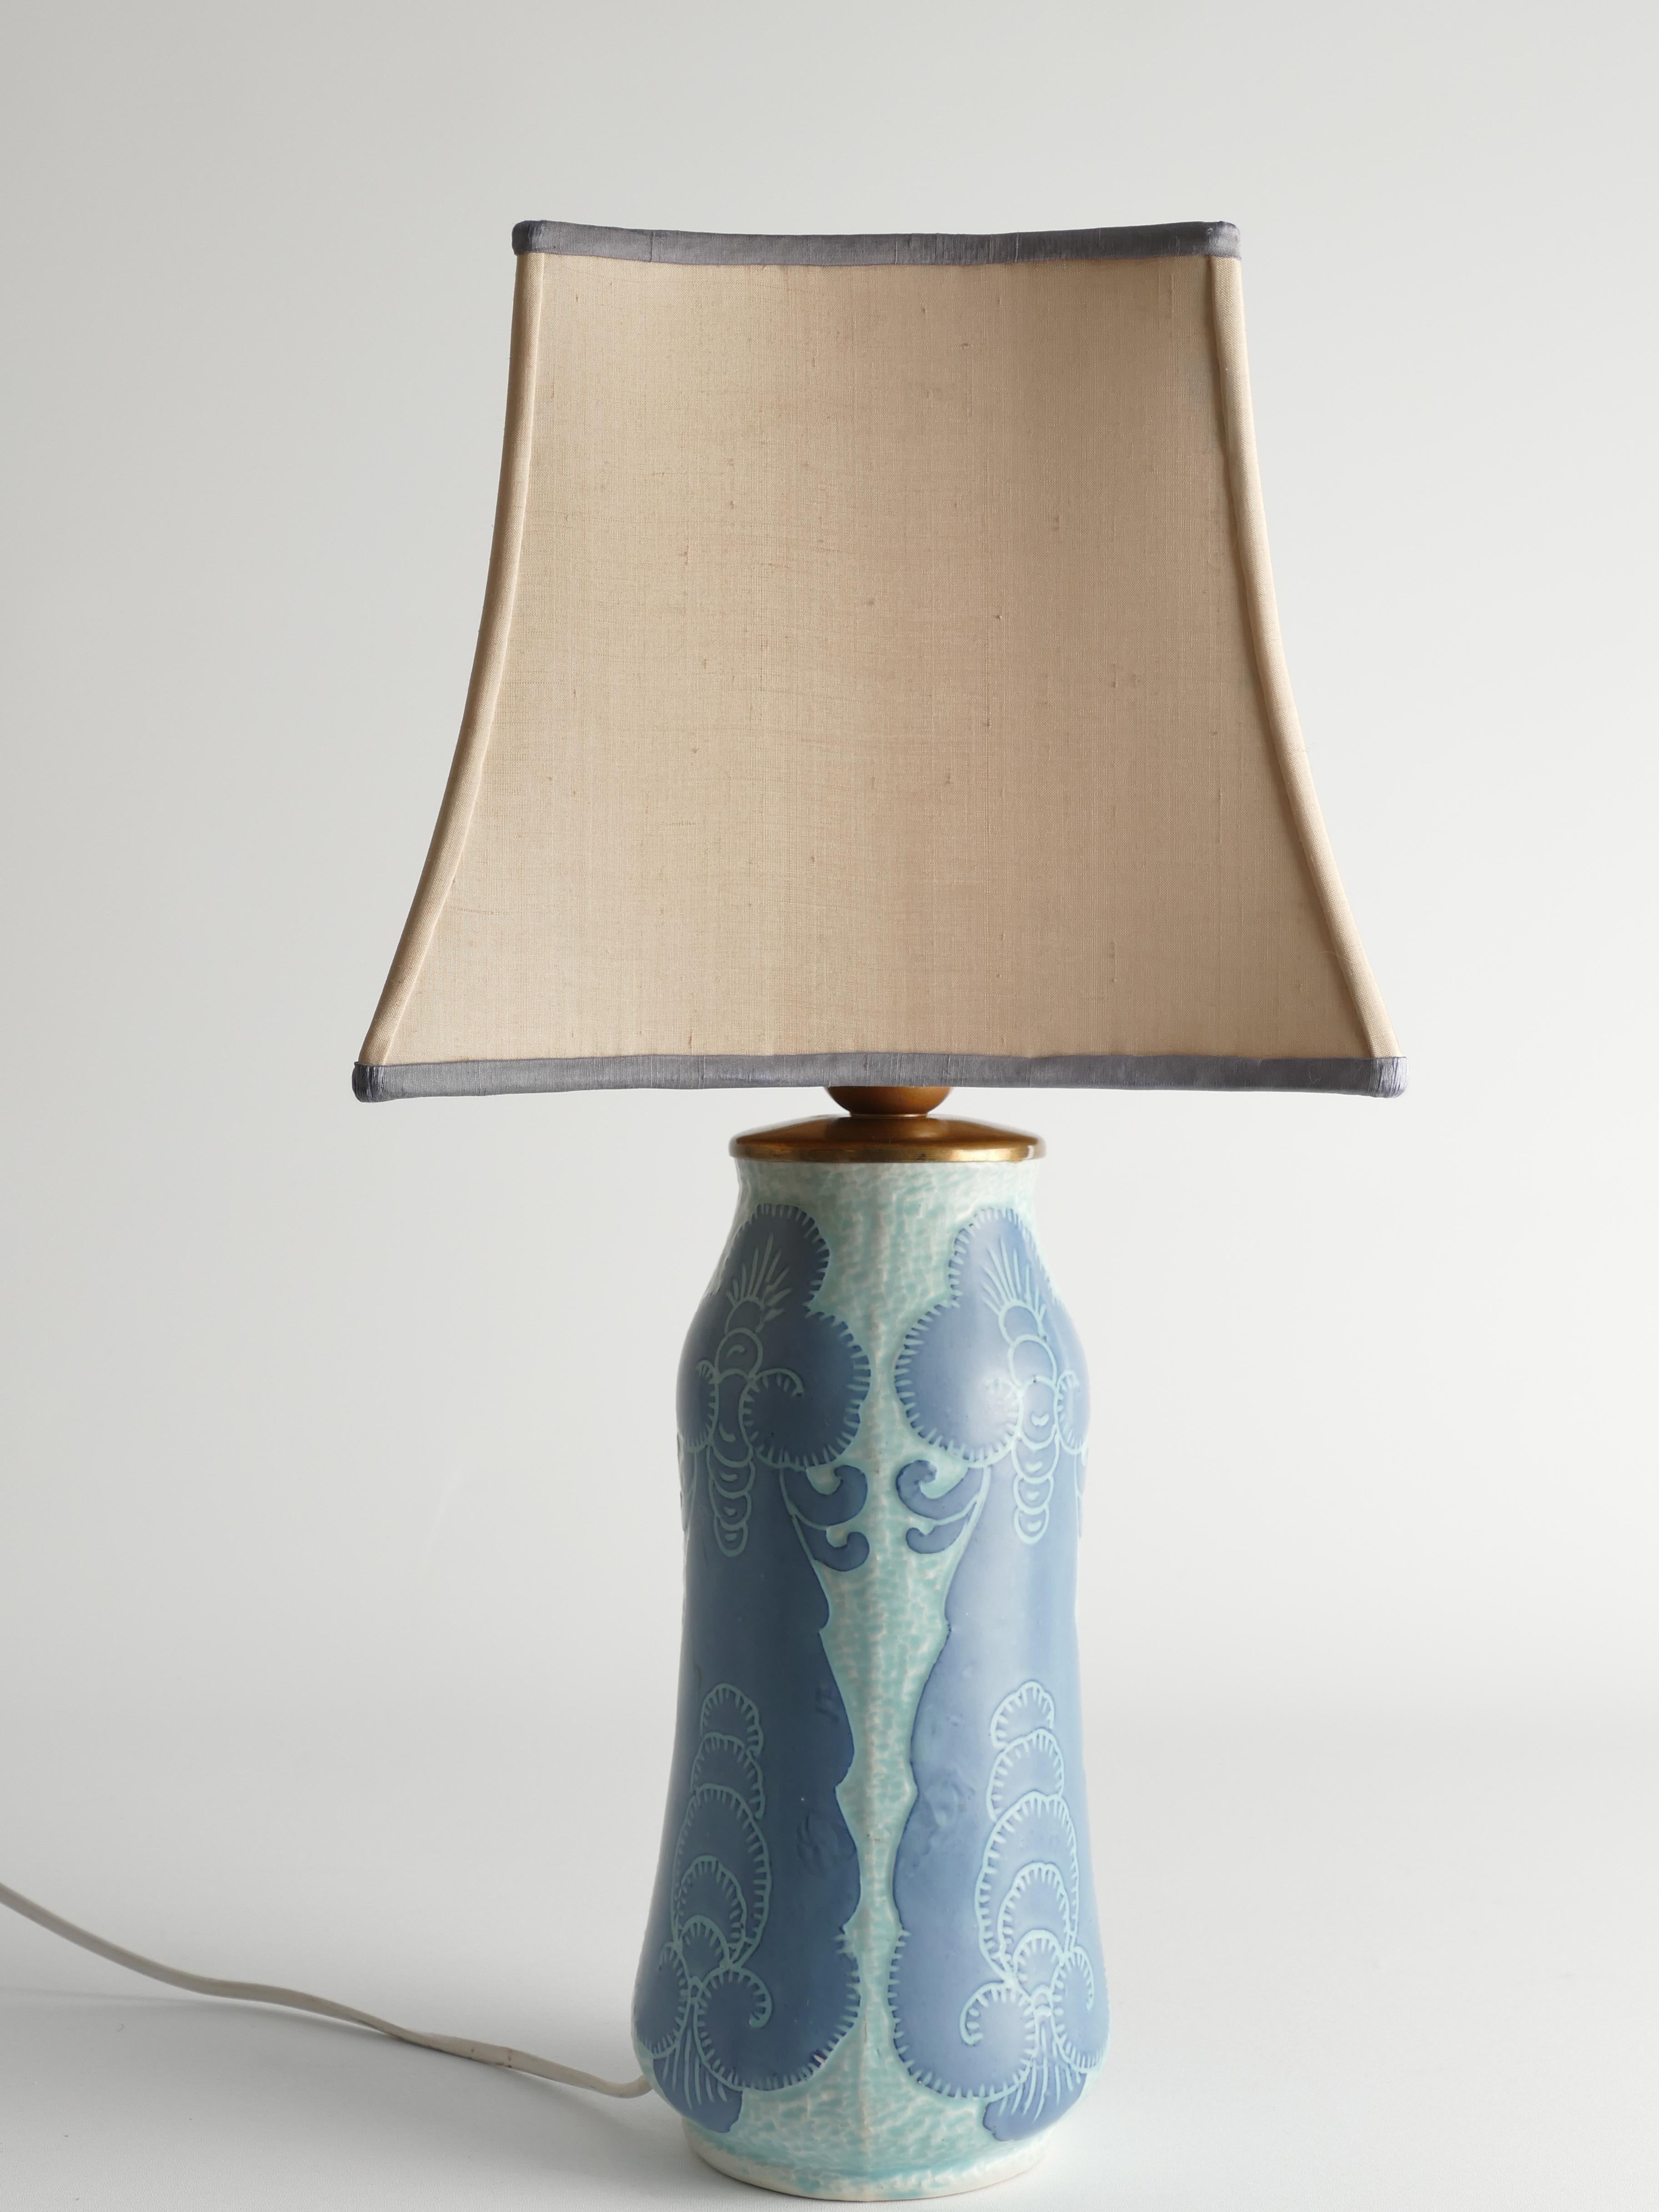 Unique Art Nouveau Pale Blue Ceramic Table Lamp by Josef Ekberg for Gustavsberg For Sale 4